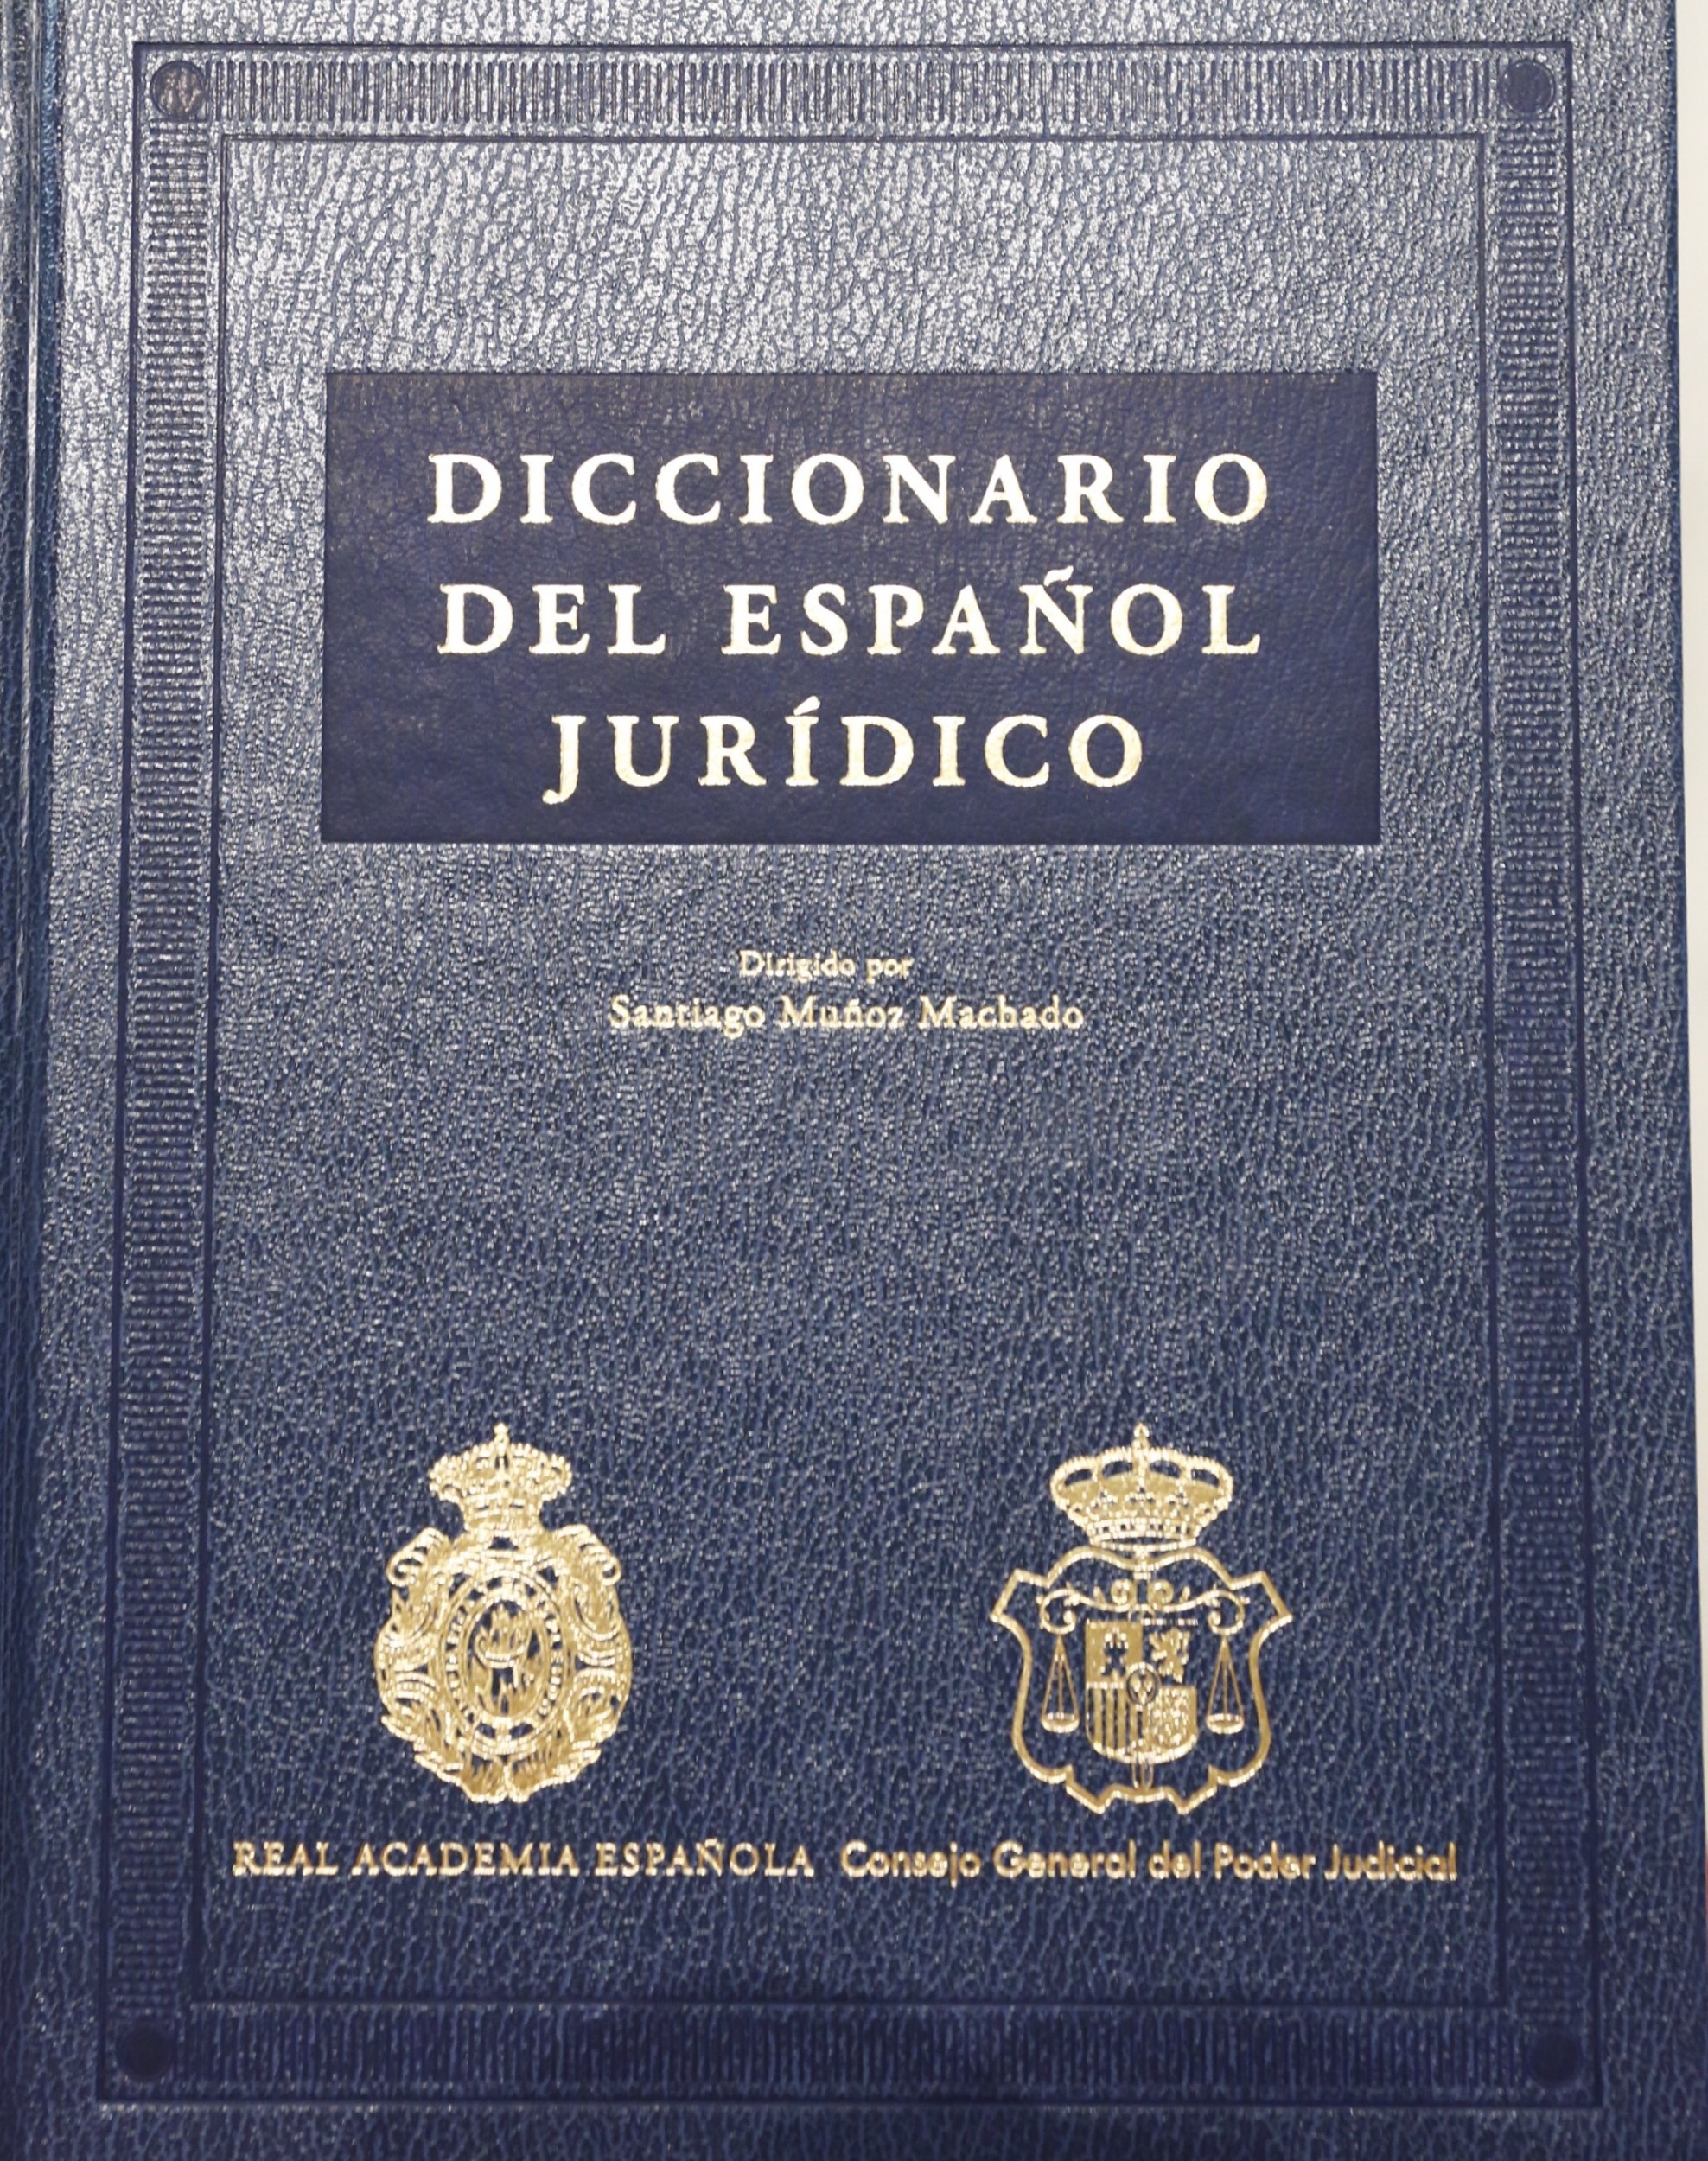 Diccionario Panhispánico del Español Jurídico – Centro Cultural